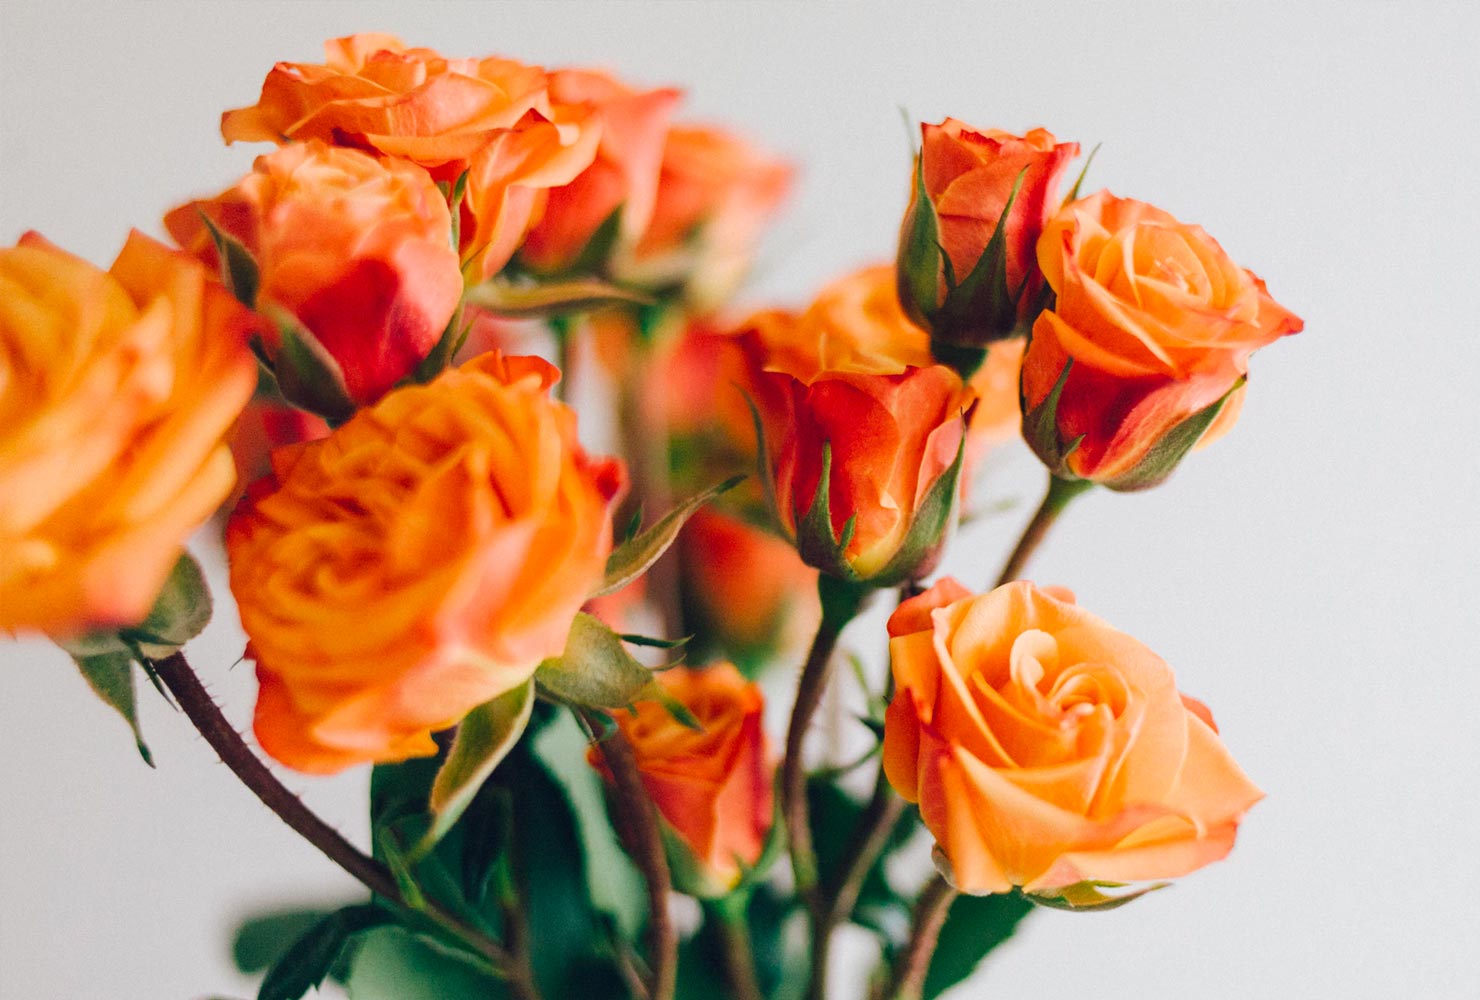 Orange bouquet of roses.